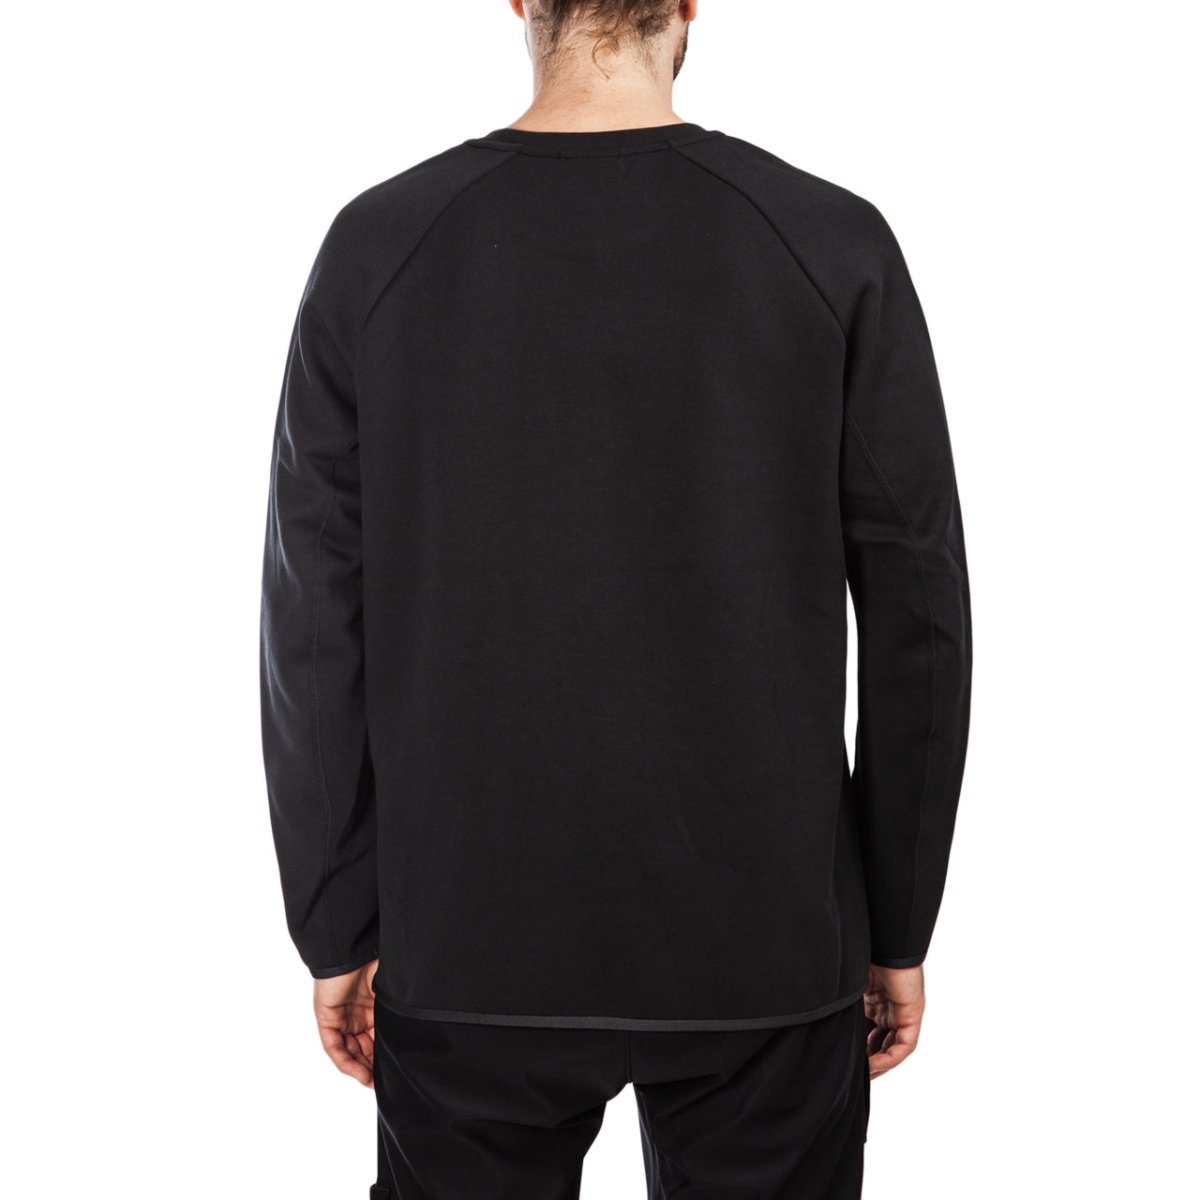 Nike Sportswear NSW Tech Fleece Longsleeve (Black)  - Allike Store